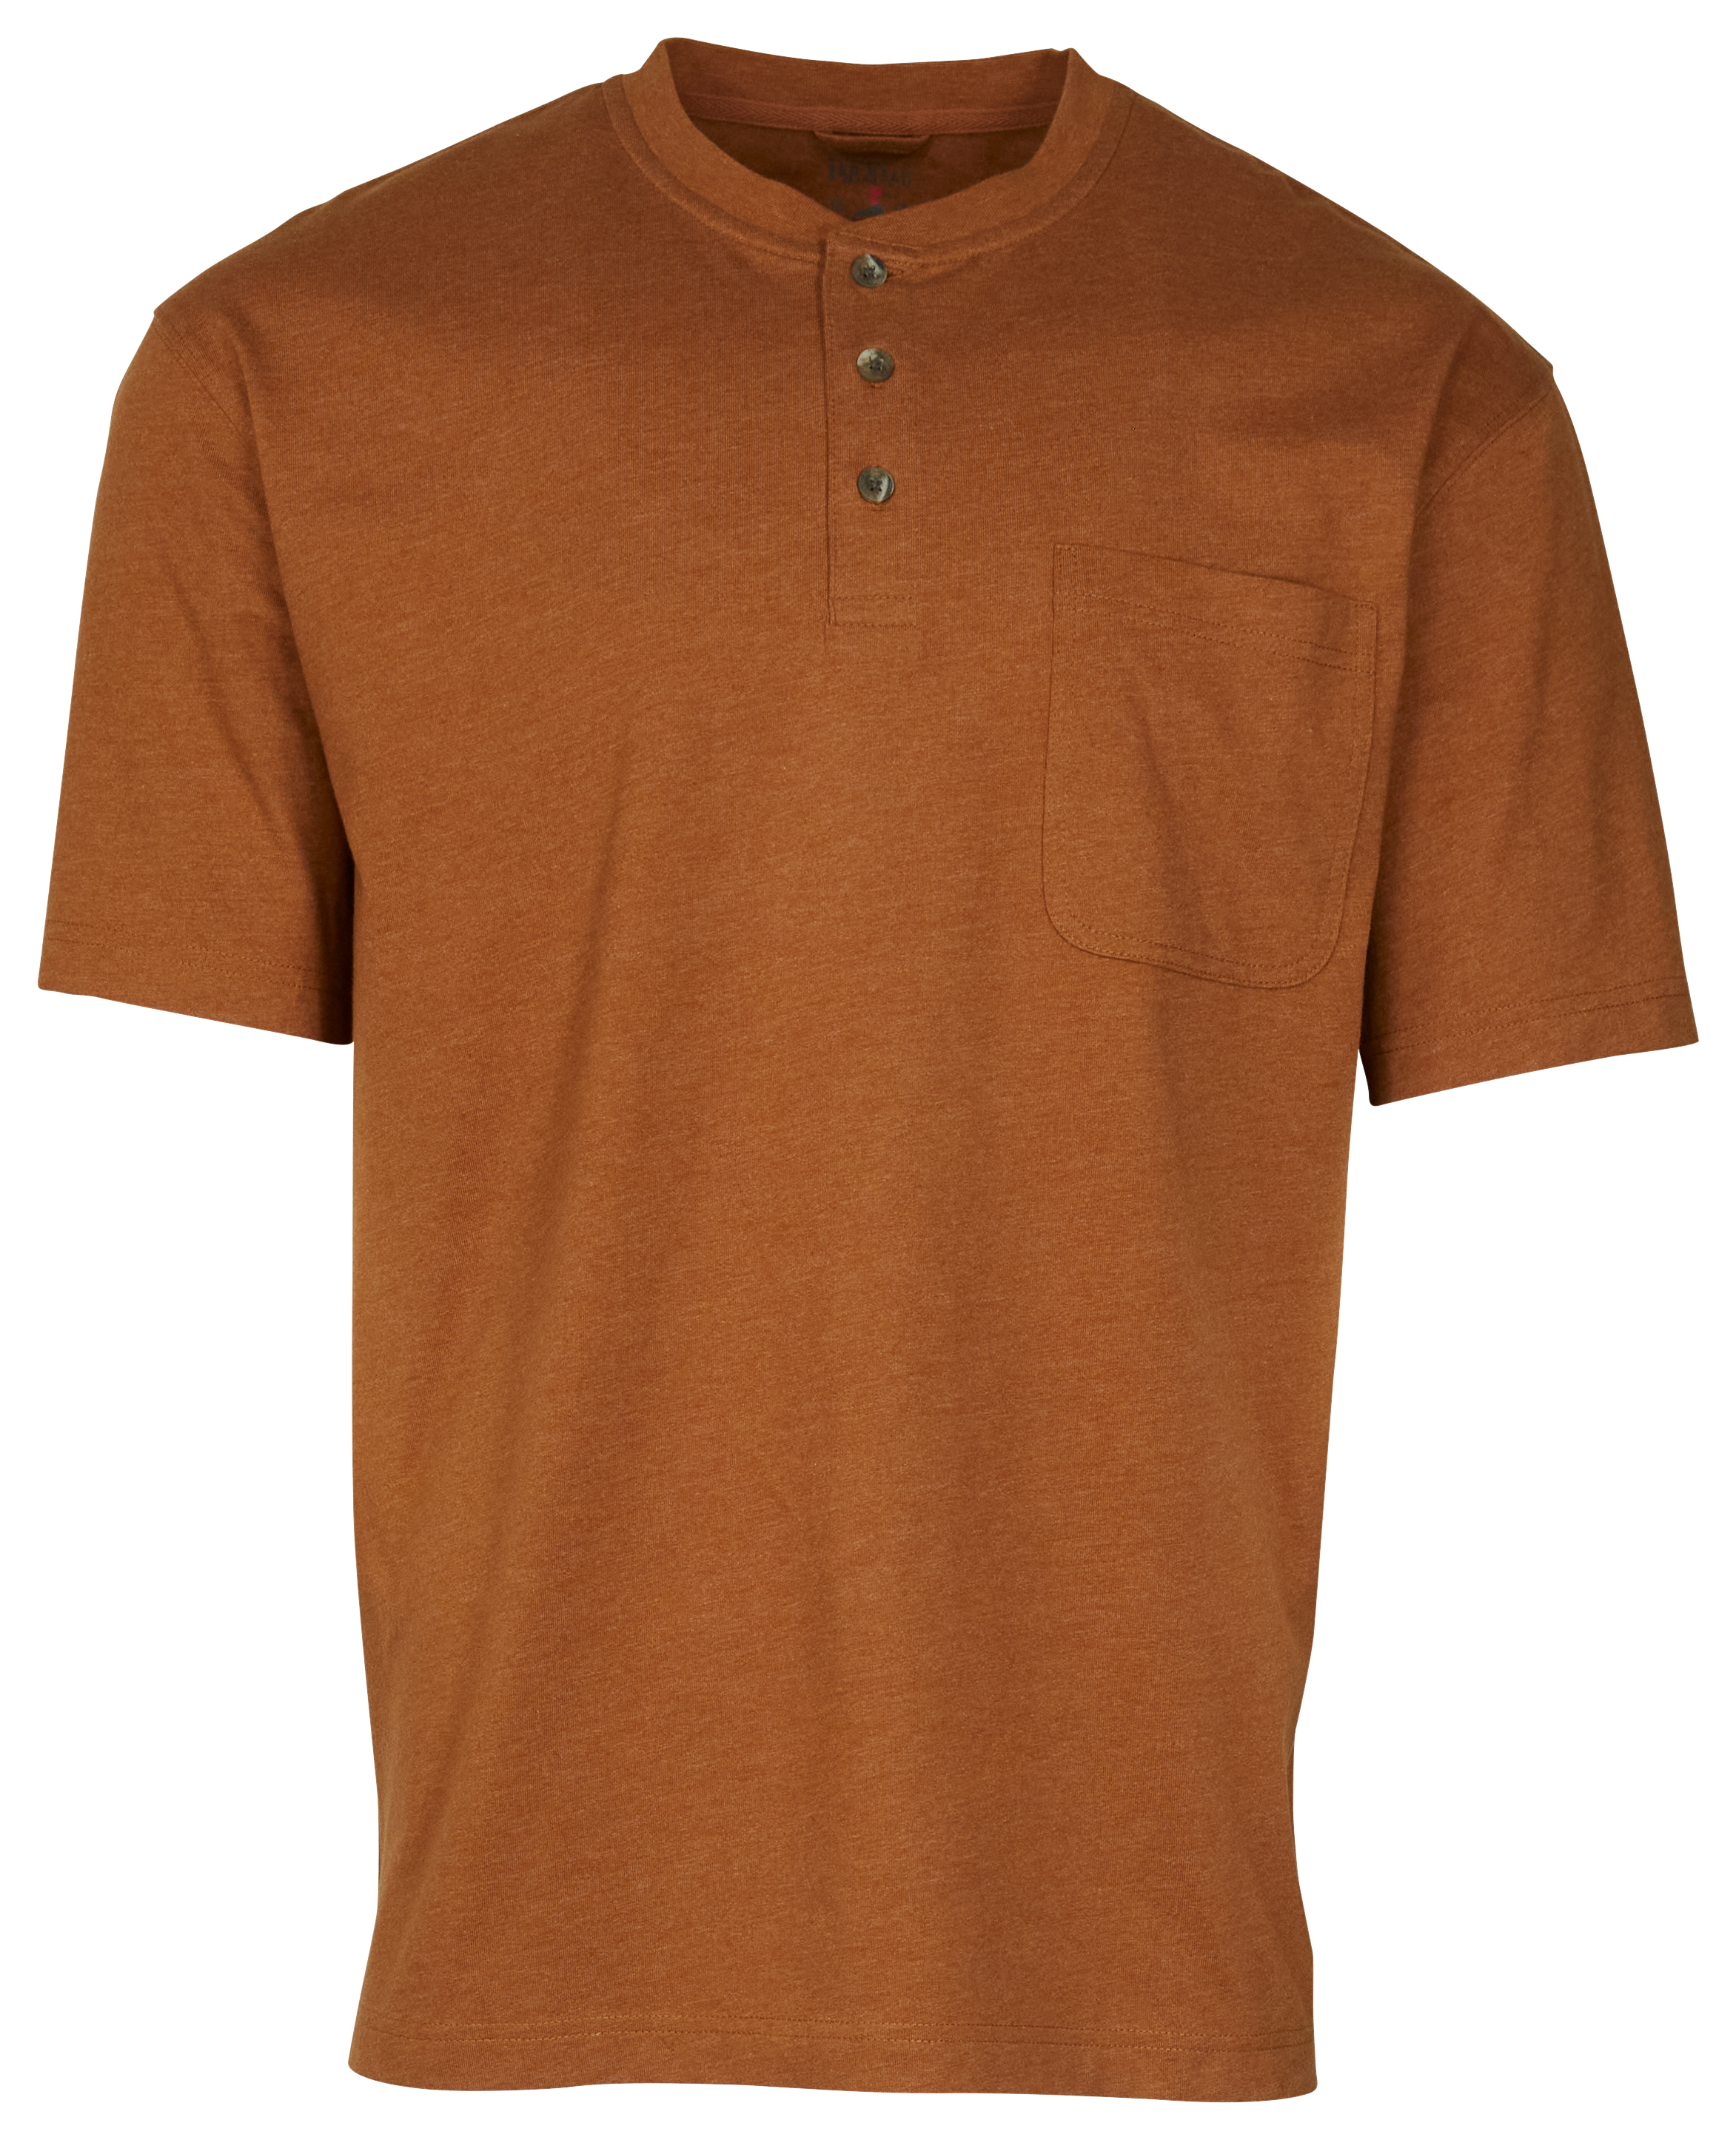 RedHead Henley Pocket Short-Sleeve Shirt for Men - Bronze Heather - 5XL